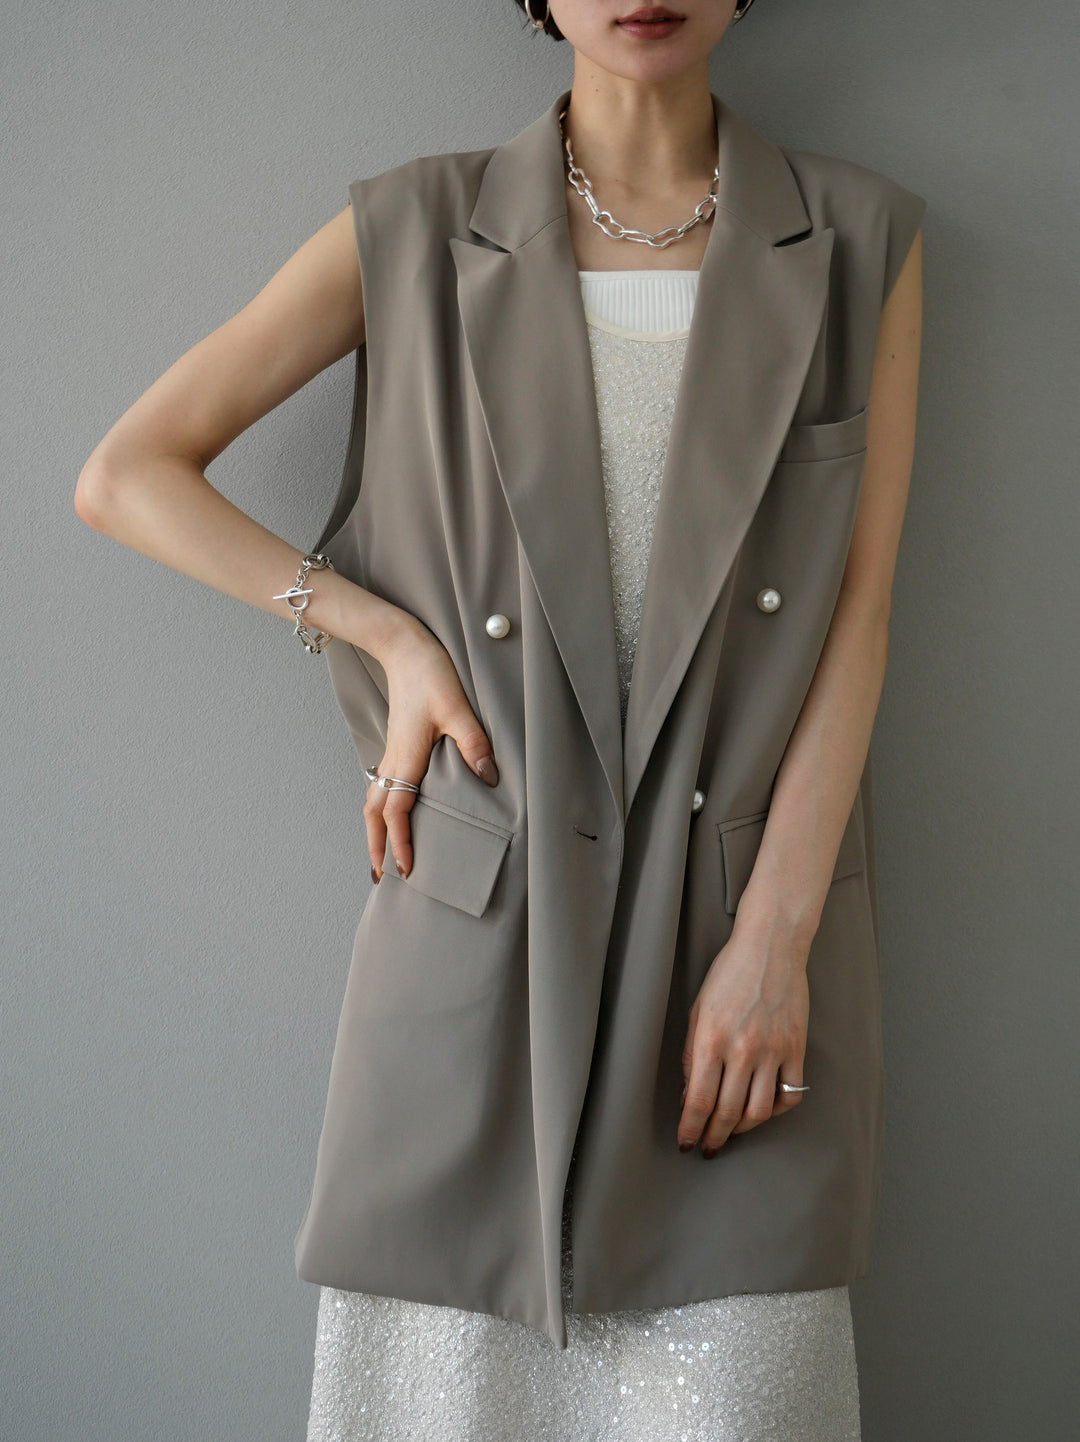 [Pre-order] Sequin Sleeveless Dress/Ivory